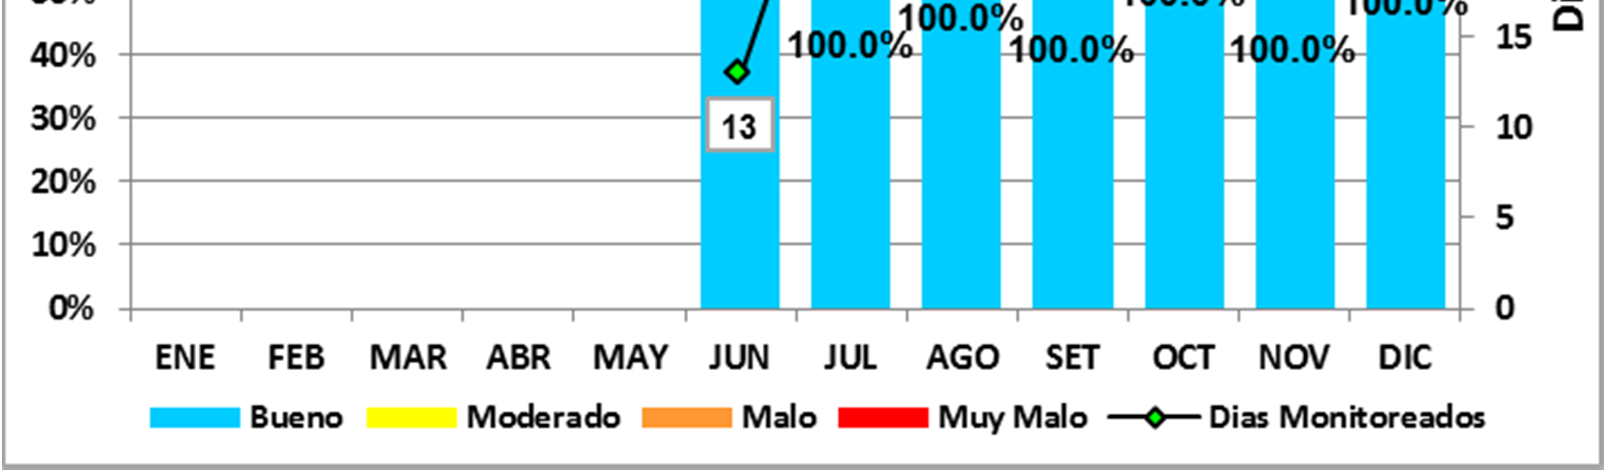 De esta forma, los mayores valores se registran después del mediodía. La estación de Campo de Marte presenta concentraciones mayores a las demás estaciones a partir del mes de junio.